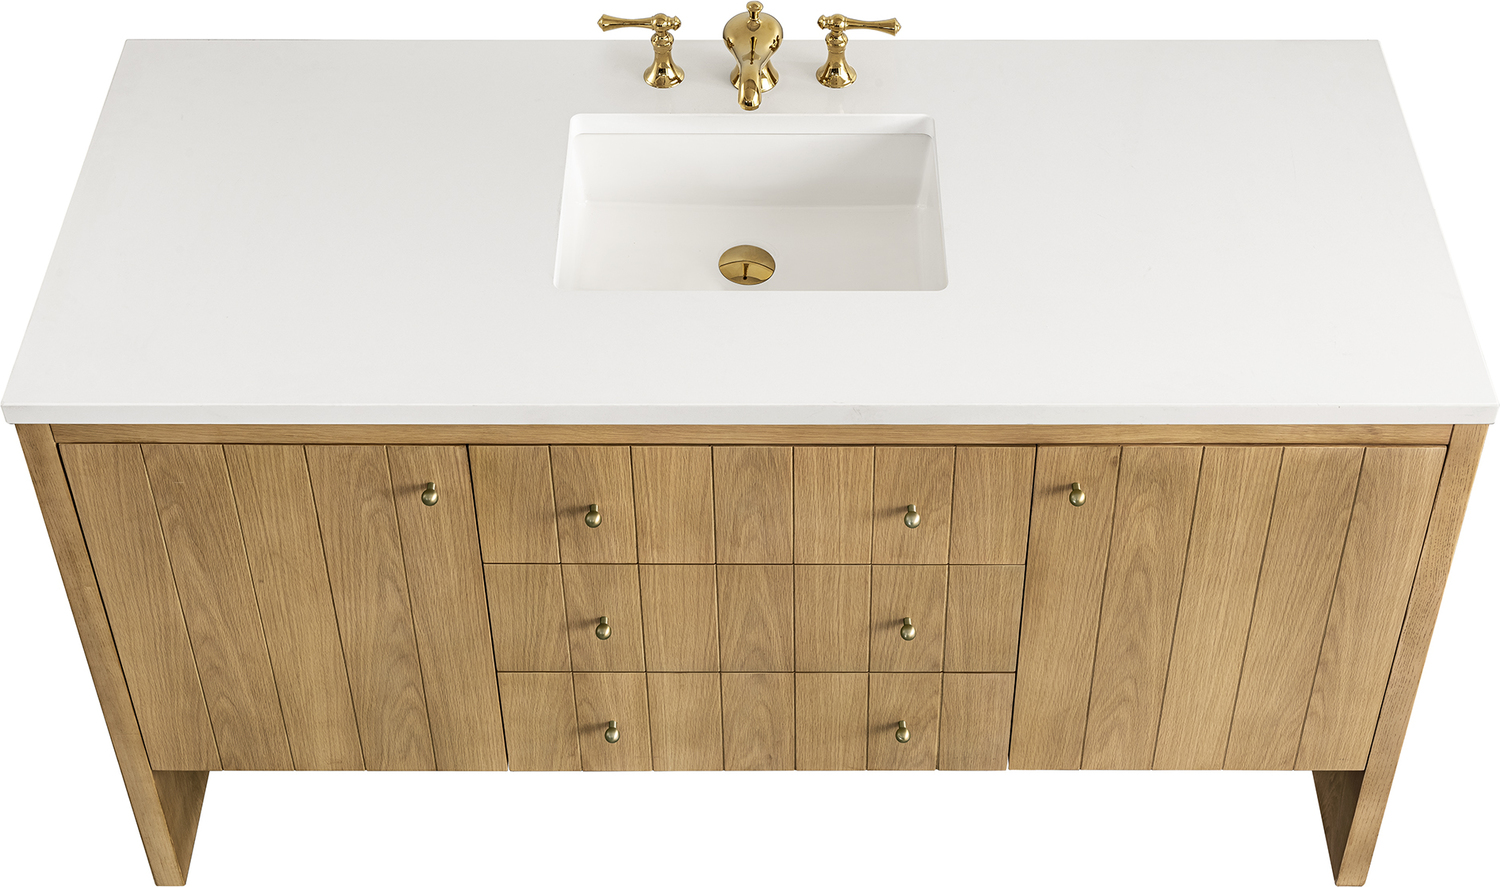  modern bathroom vanities James Martin Cabinet Light Natural Oak Contemporary/Modern, Modern Farmhouse.Transitional